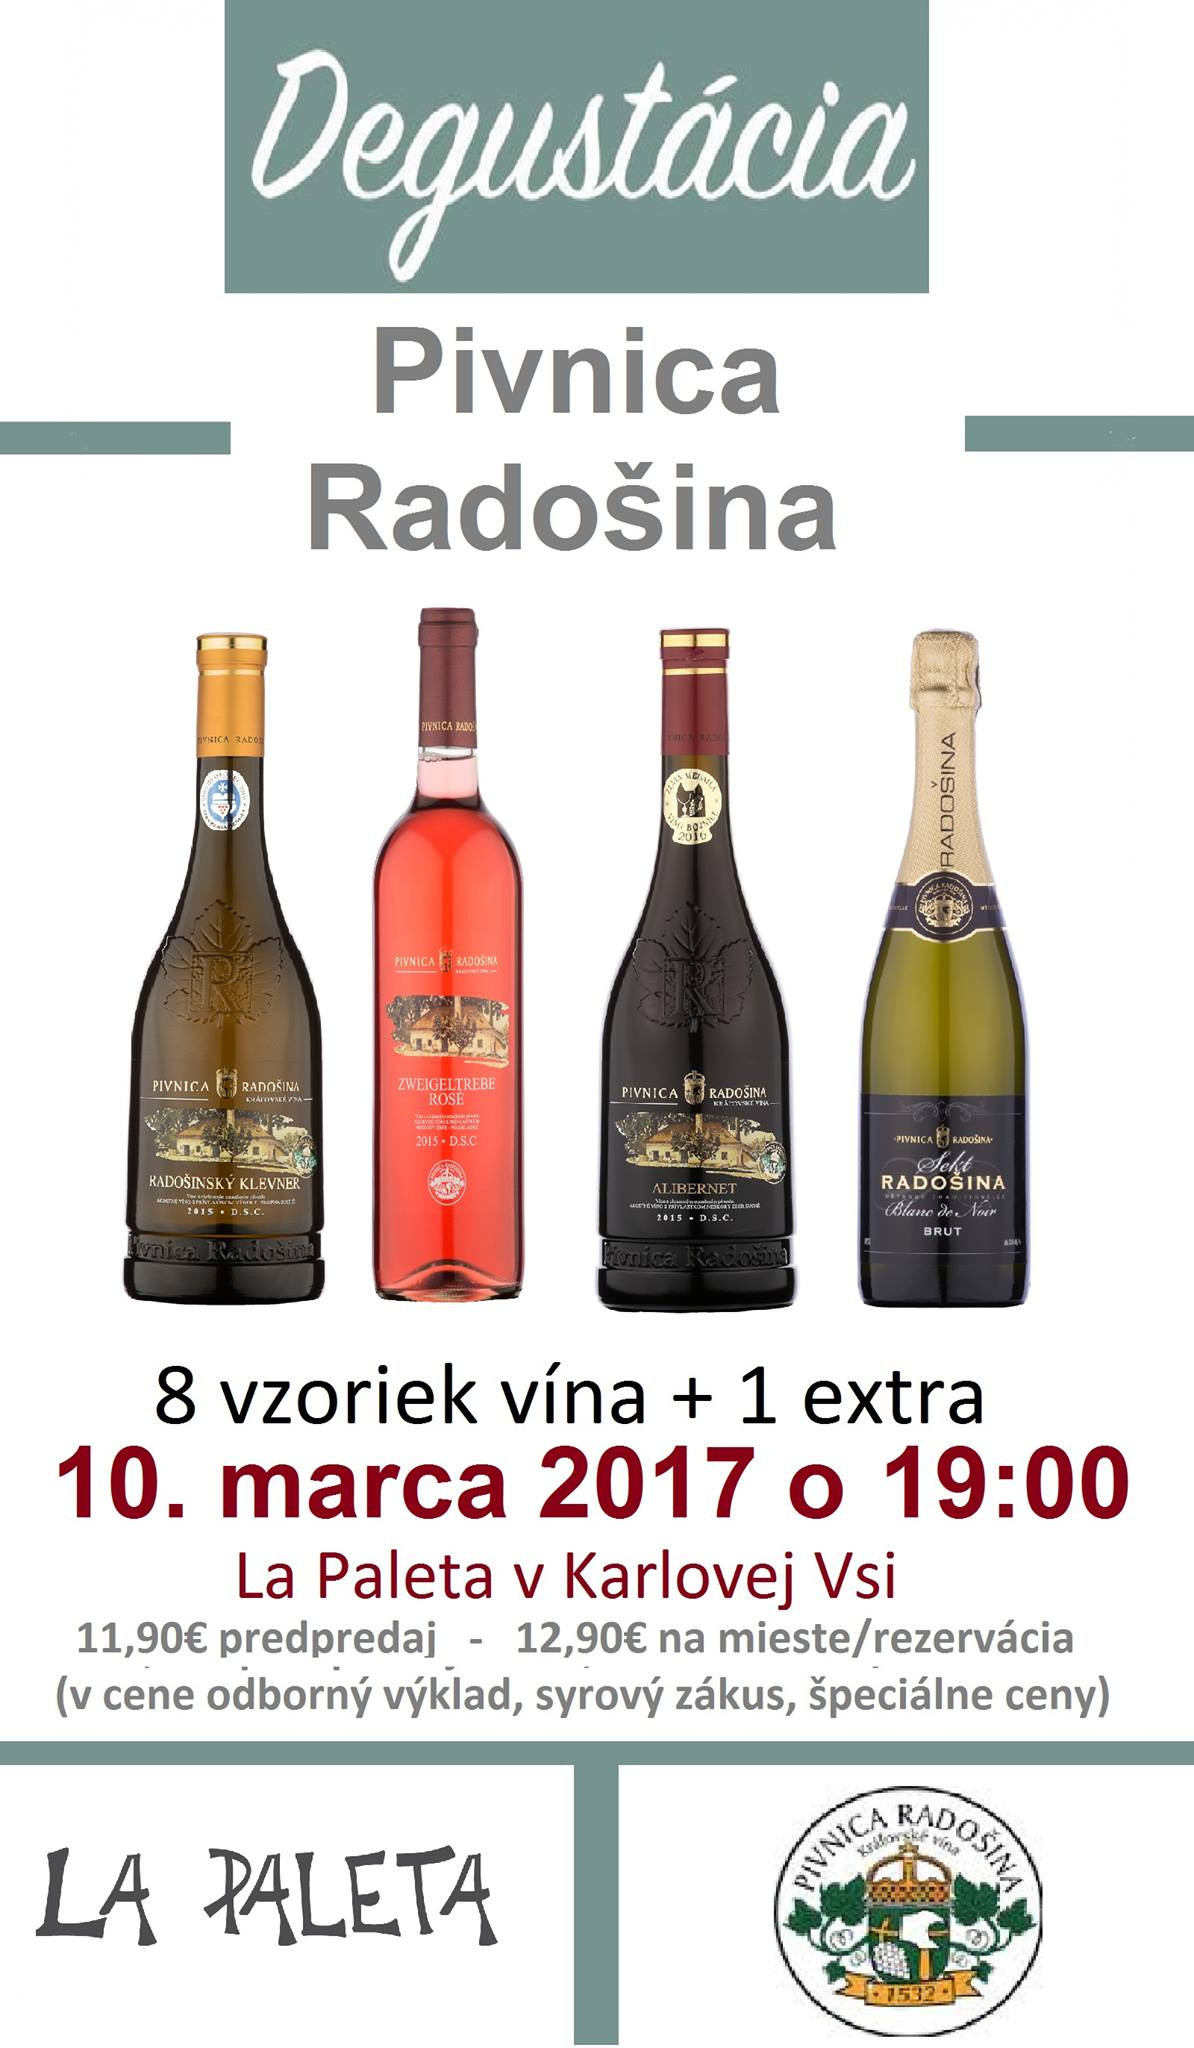 Degustácia kráľovských vín - Pivnica Radošina (10.3.2017)